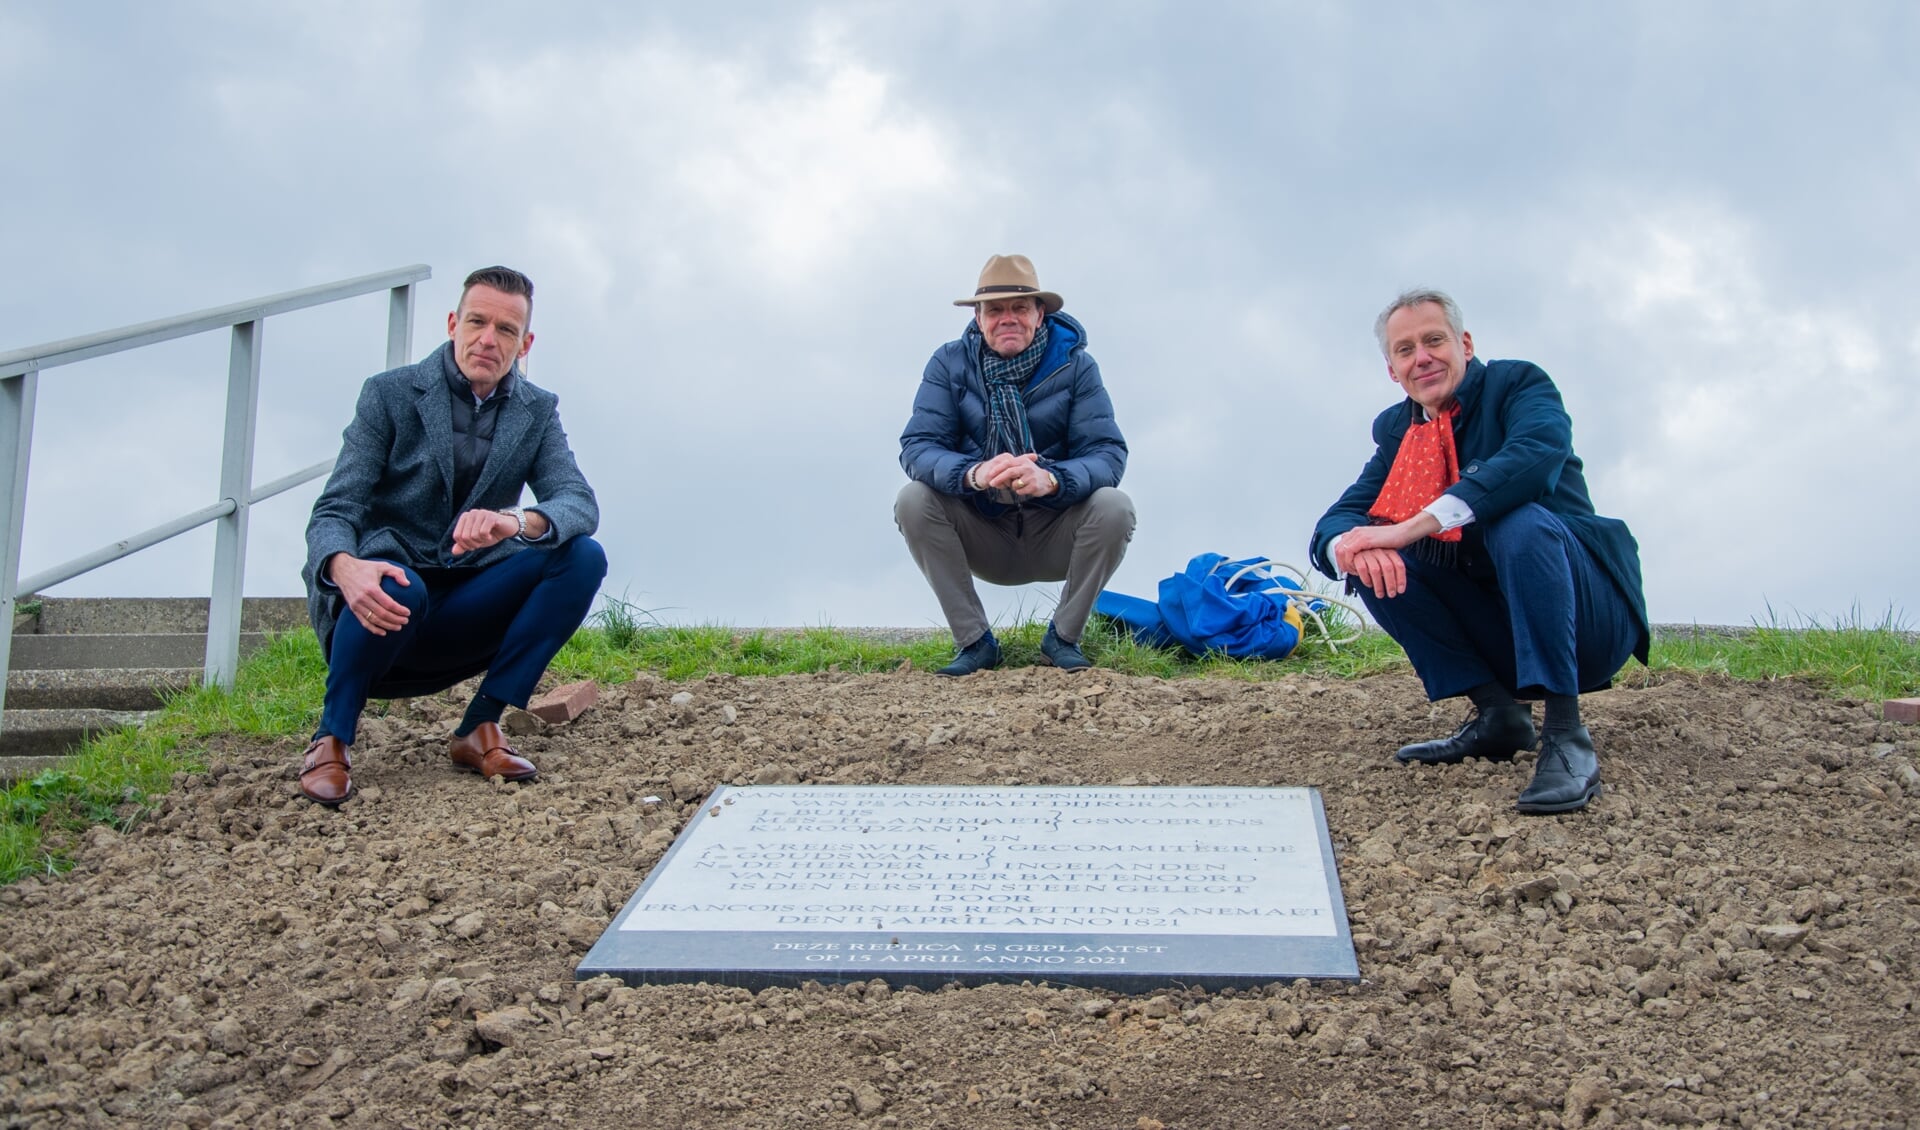 V.l.n.r.: Wethouder Daan Markwat, dorpsraadsecretaris Dick Jonker en dijkgraaf Jan Bonjer onthulden de replica in de dijk van Battenoord.  Foto: Sam Fish